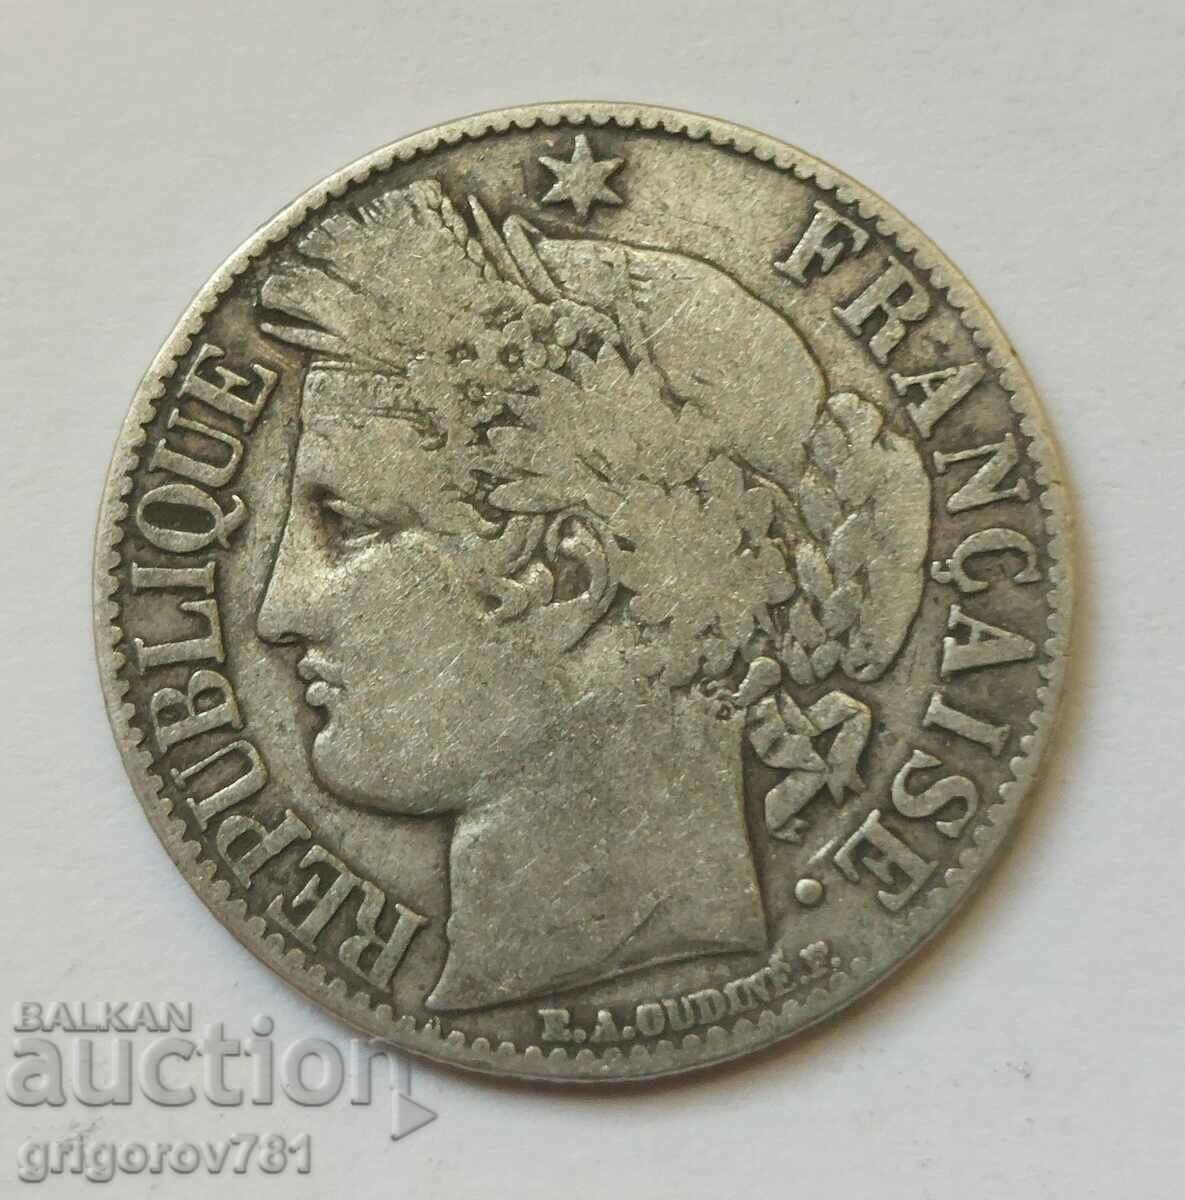 Ασήμι 1 φράγκου Γαλλία 1881 A - Ασημένιο νόμισμα #40